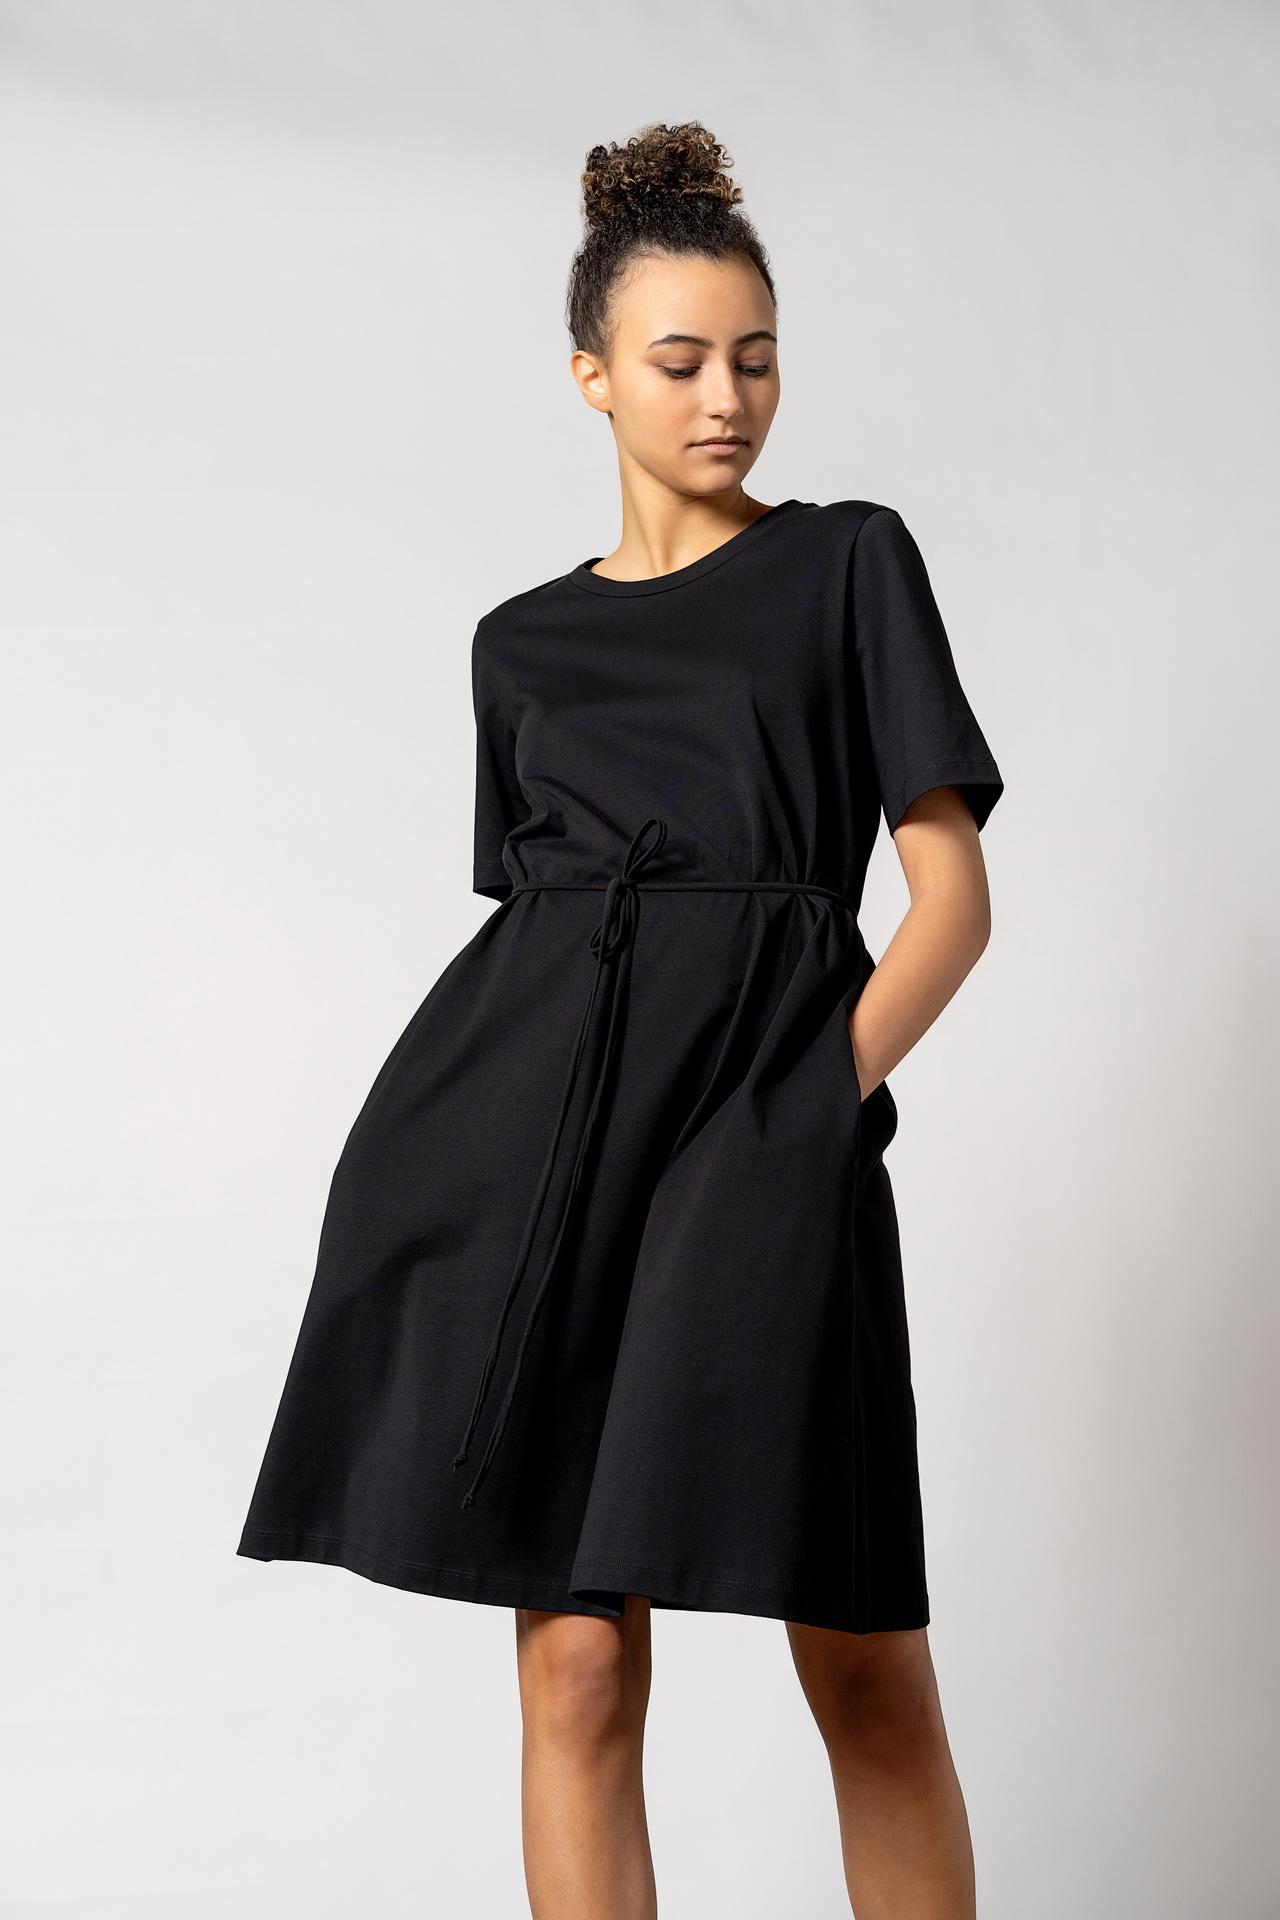 Ofelia Org Cotton Dress - Black | R E S I D U S